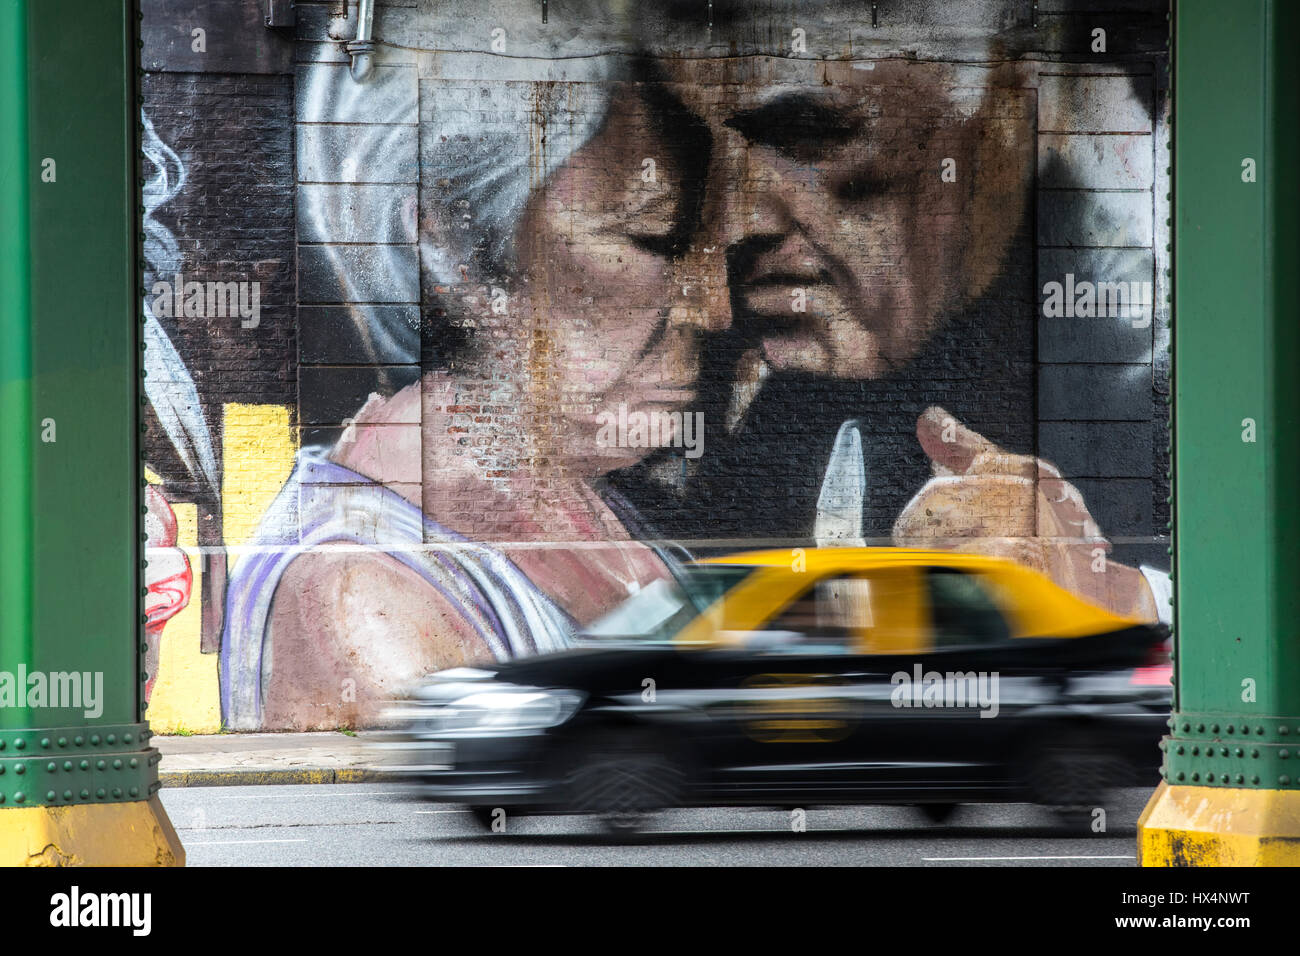 Un taxi porteño en premier plan et un gigantesque mur art montrant un couple de danseurs de tango dans l'arrière-plan. Palermo, Buenos Aires, Argentine. Banque D'Images